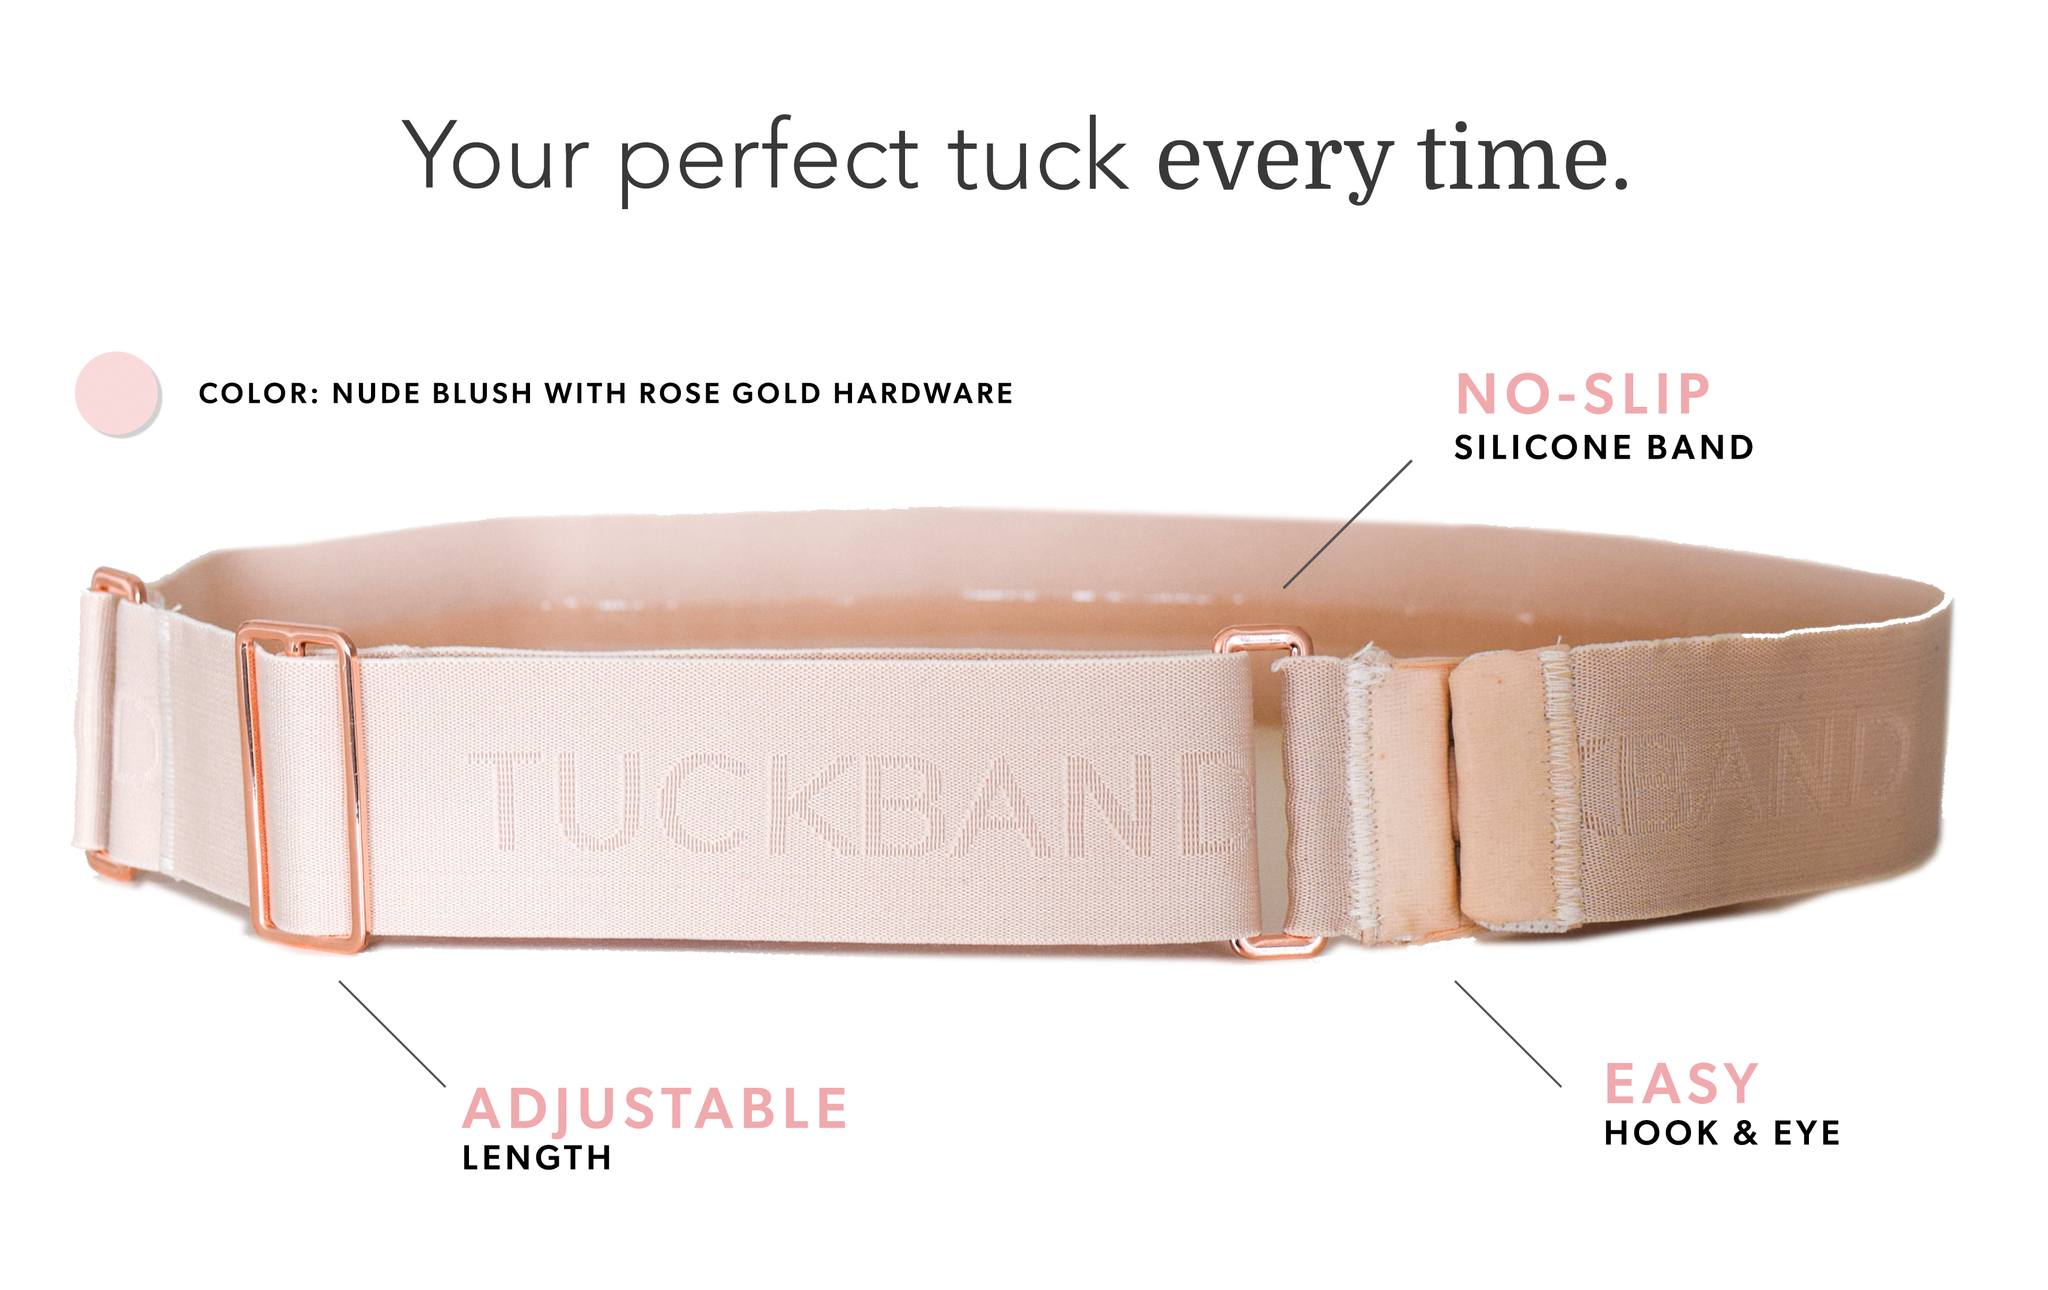 How Tuckband Works